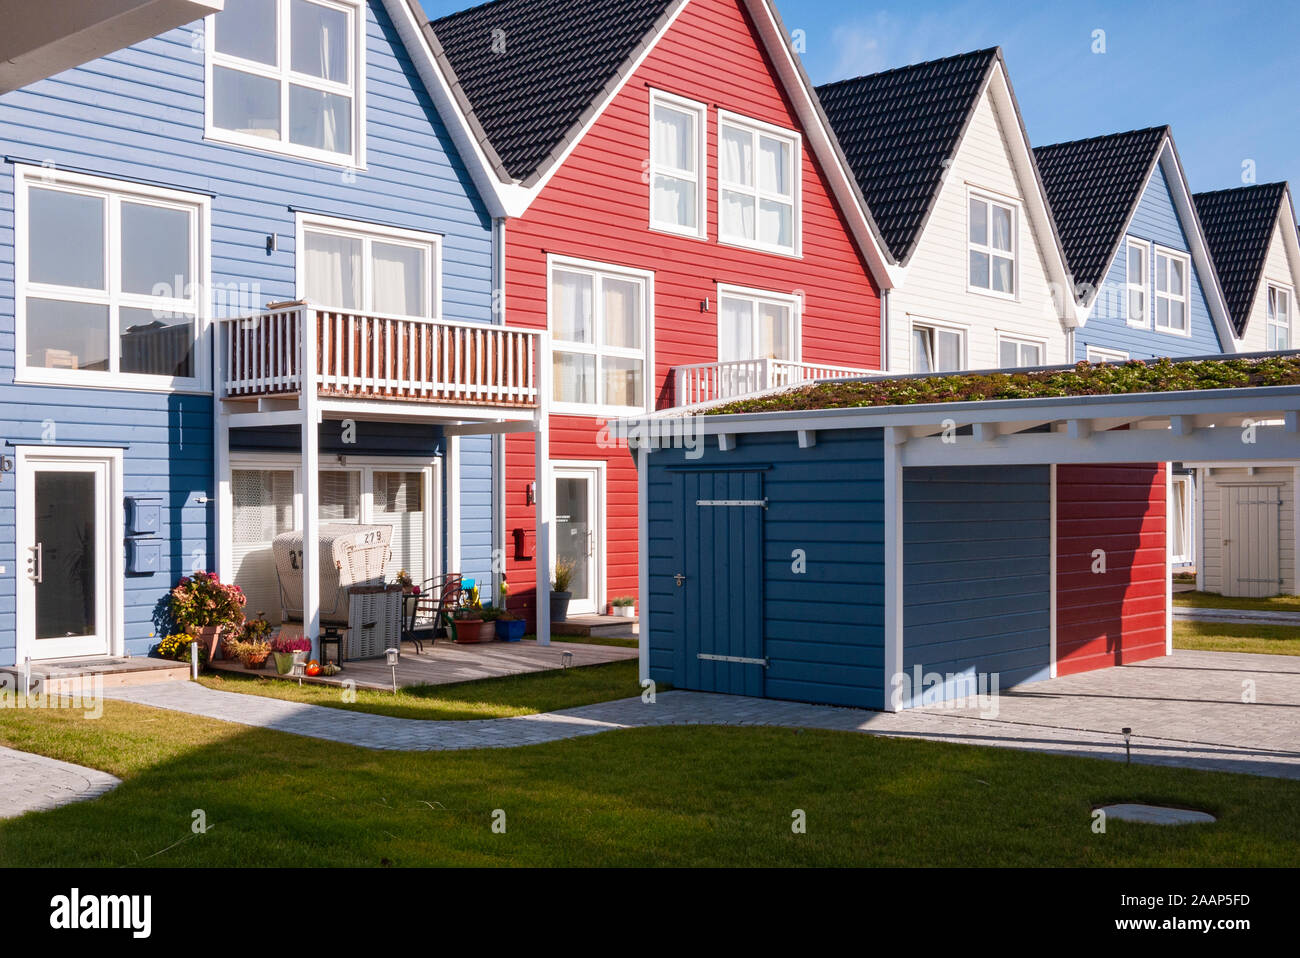 Wohnsiedlung mit kleinen Einfamilienhäusern und Ferienwohnungen in Hörnum auf Sylt Stock Photo